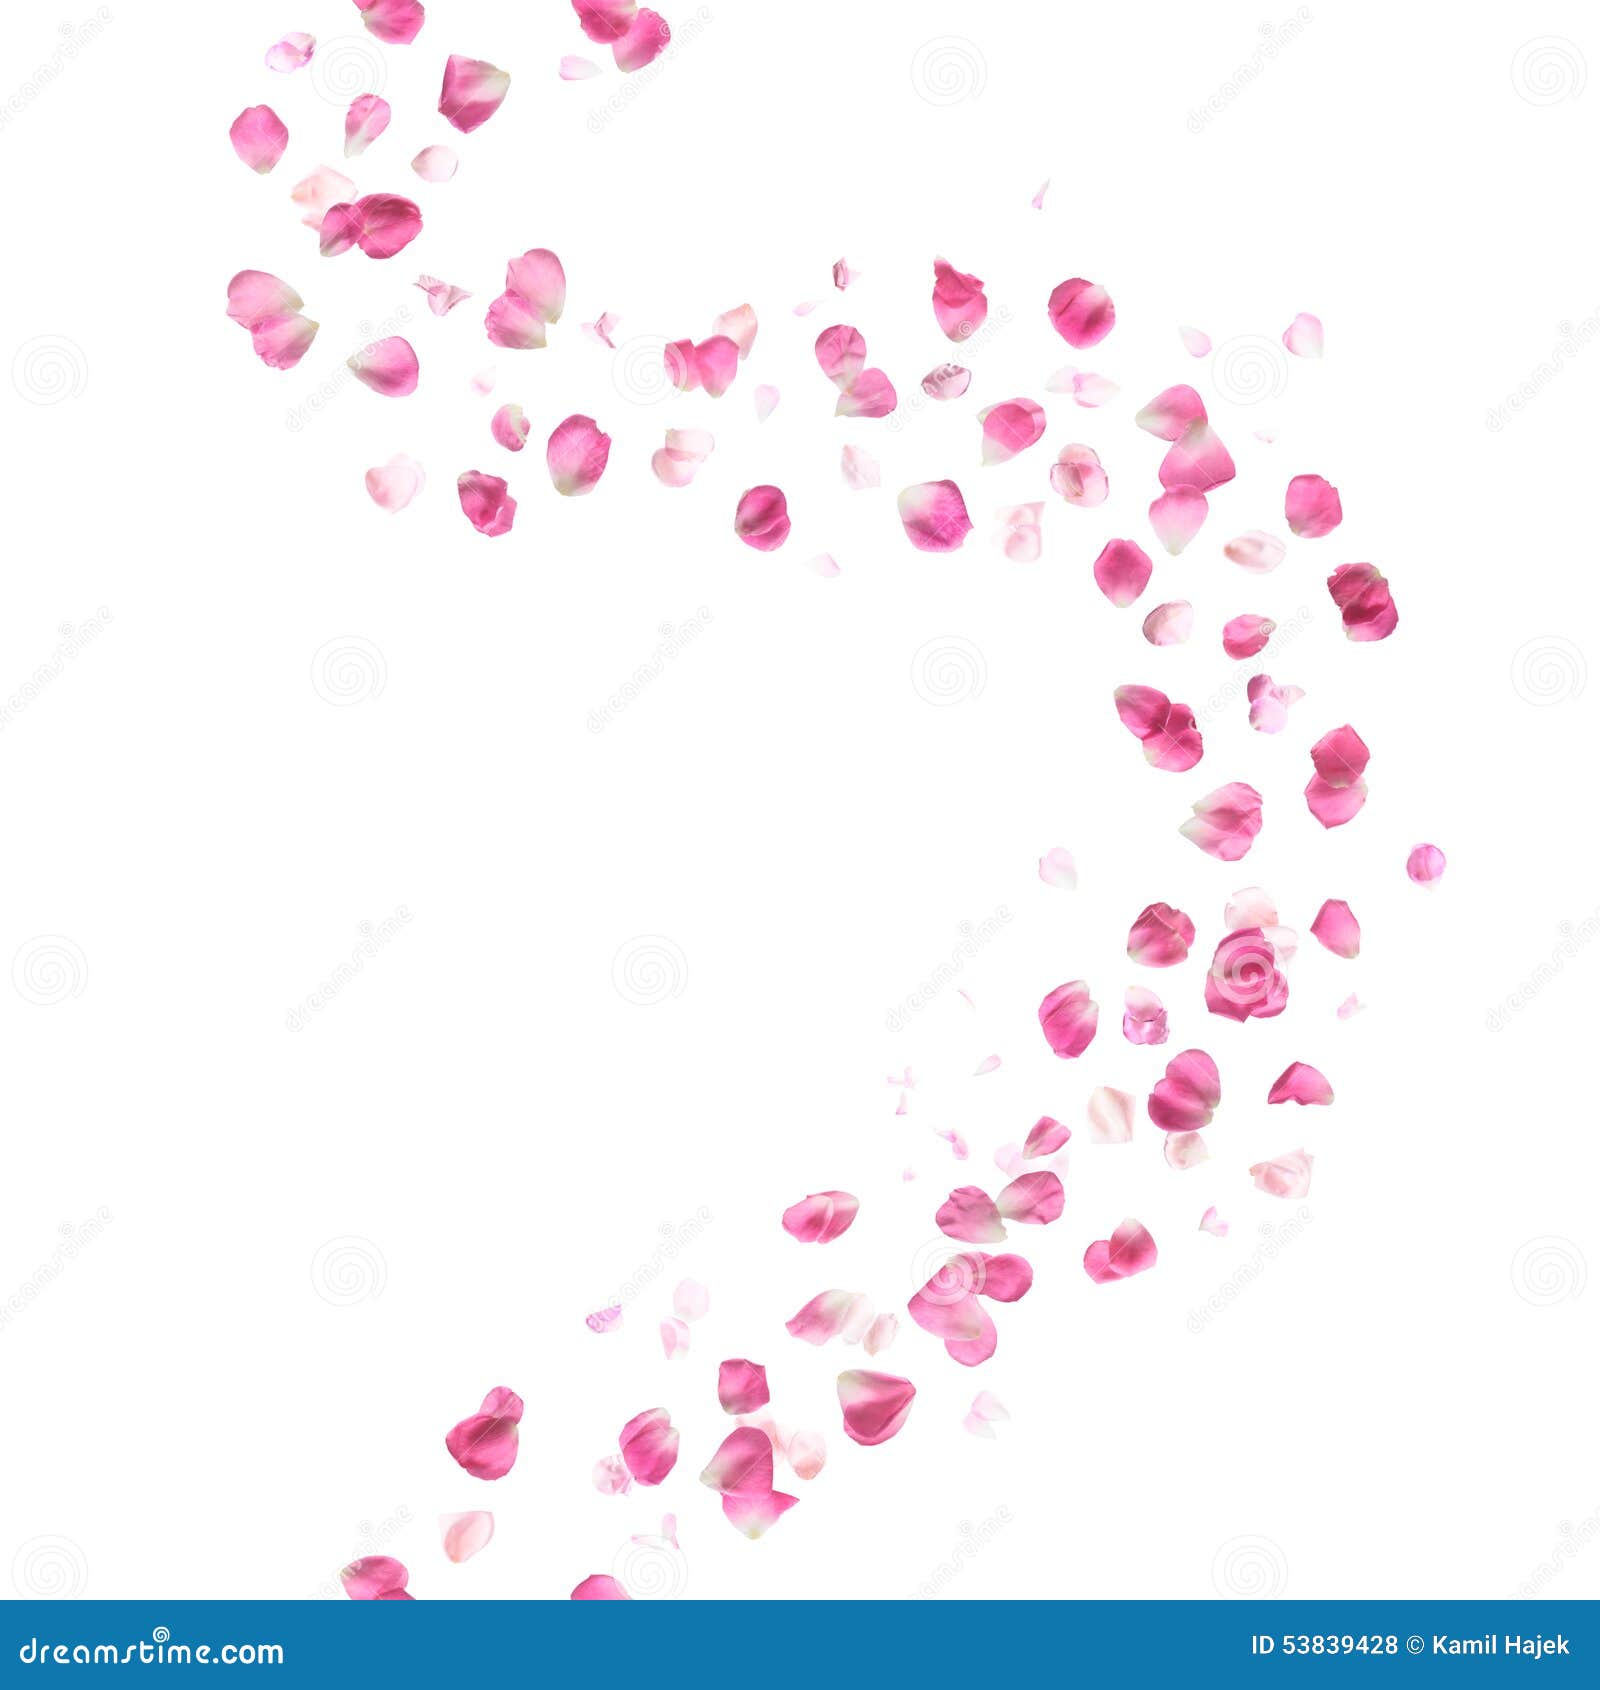 seamless pink rose petals pattern